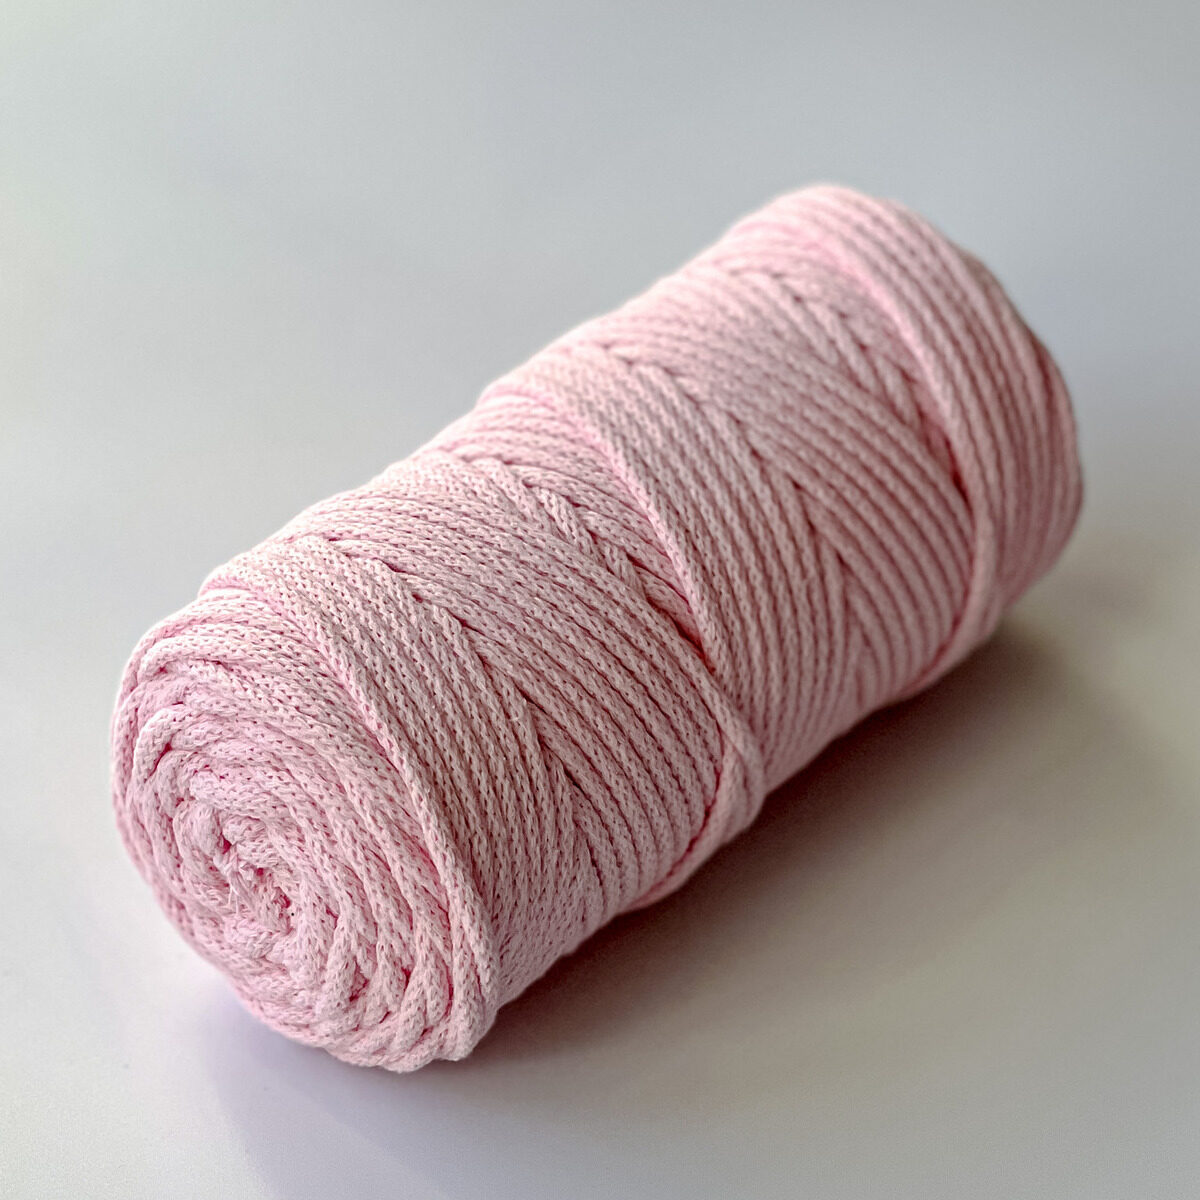 Sznurek do makramy pleciony z bawełnianym rdzeniem, grubość 5 mm. Kolor: pastelowy róż.